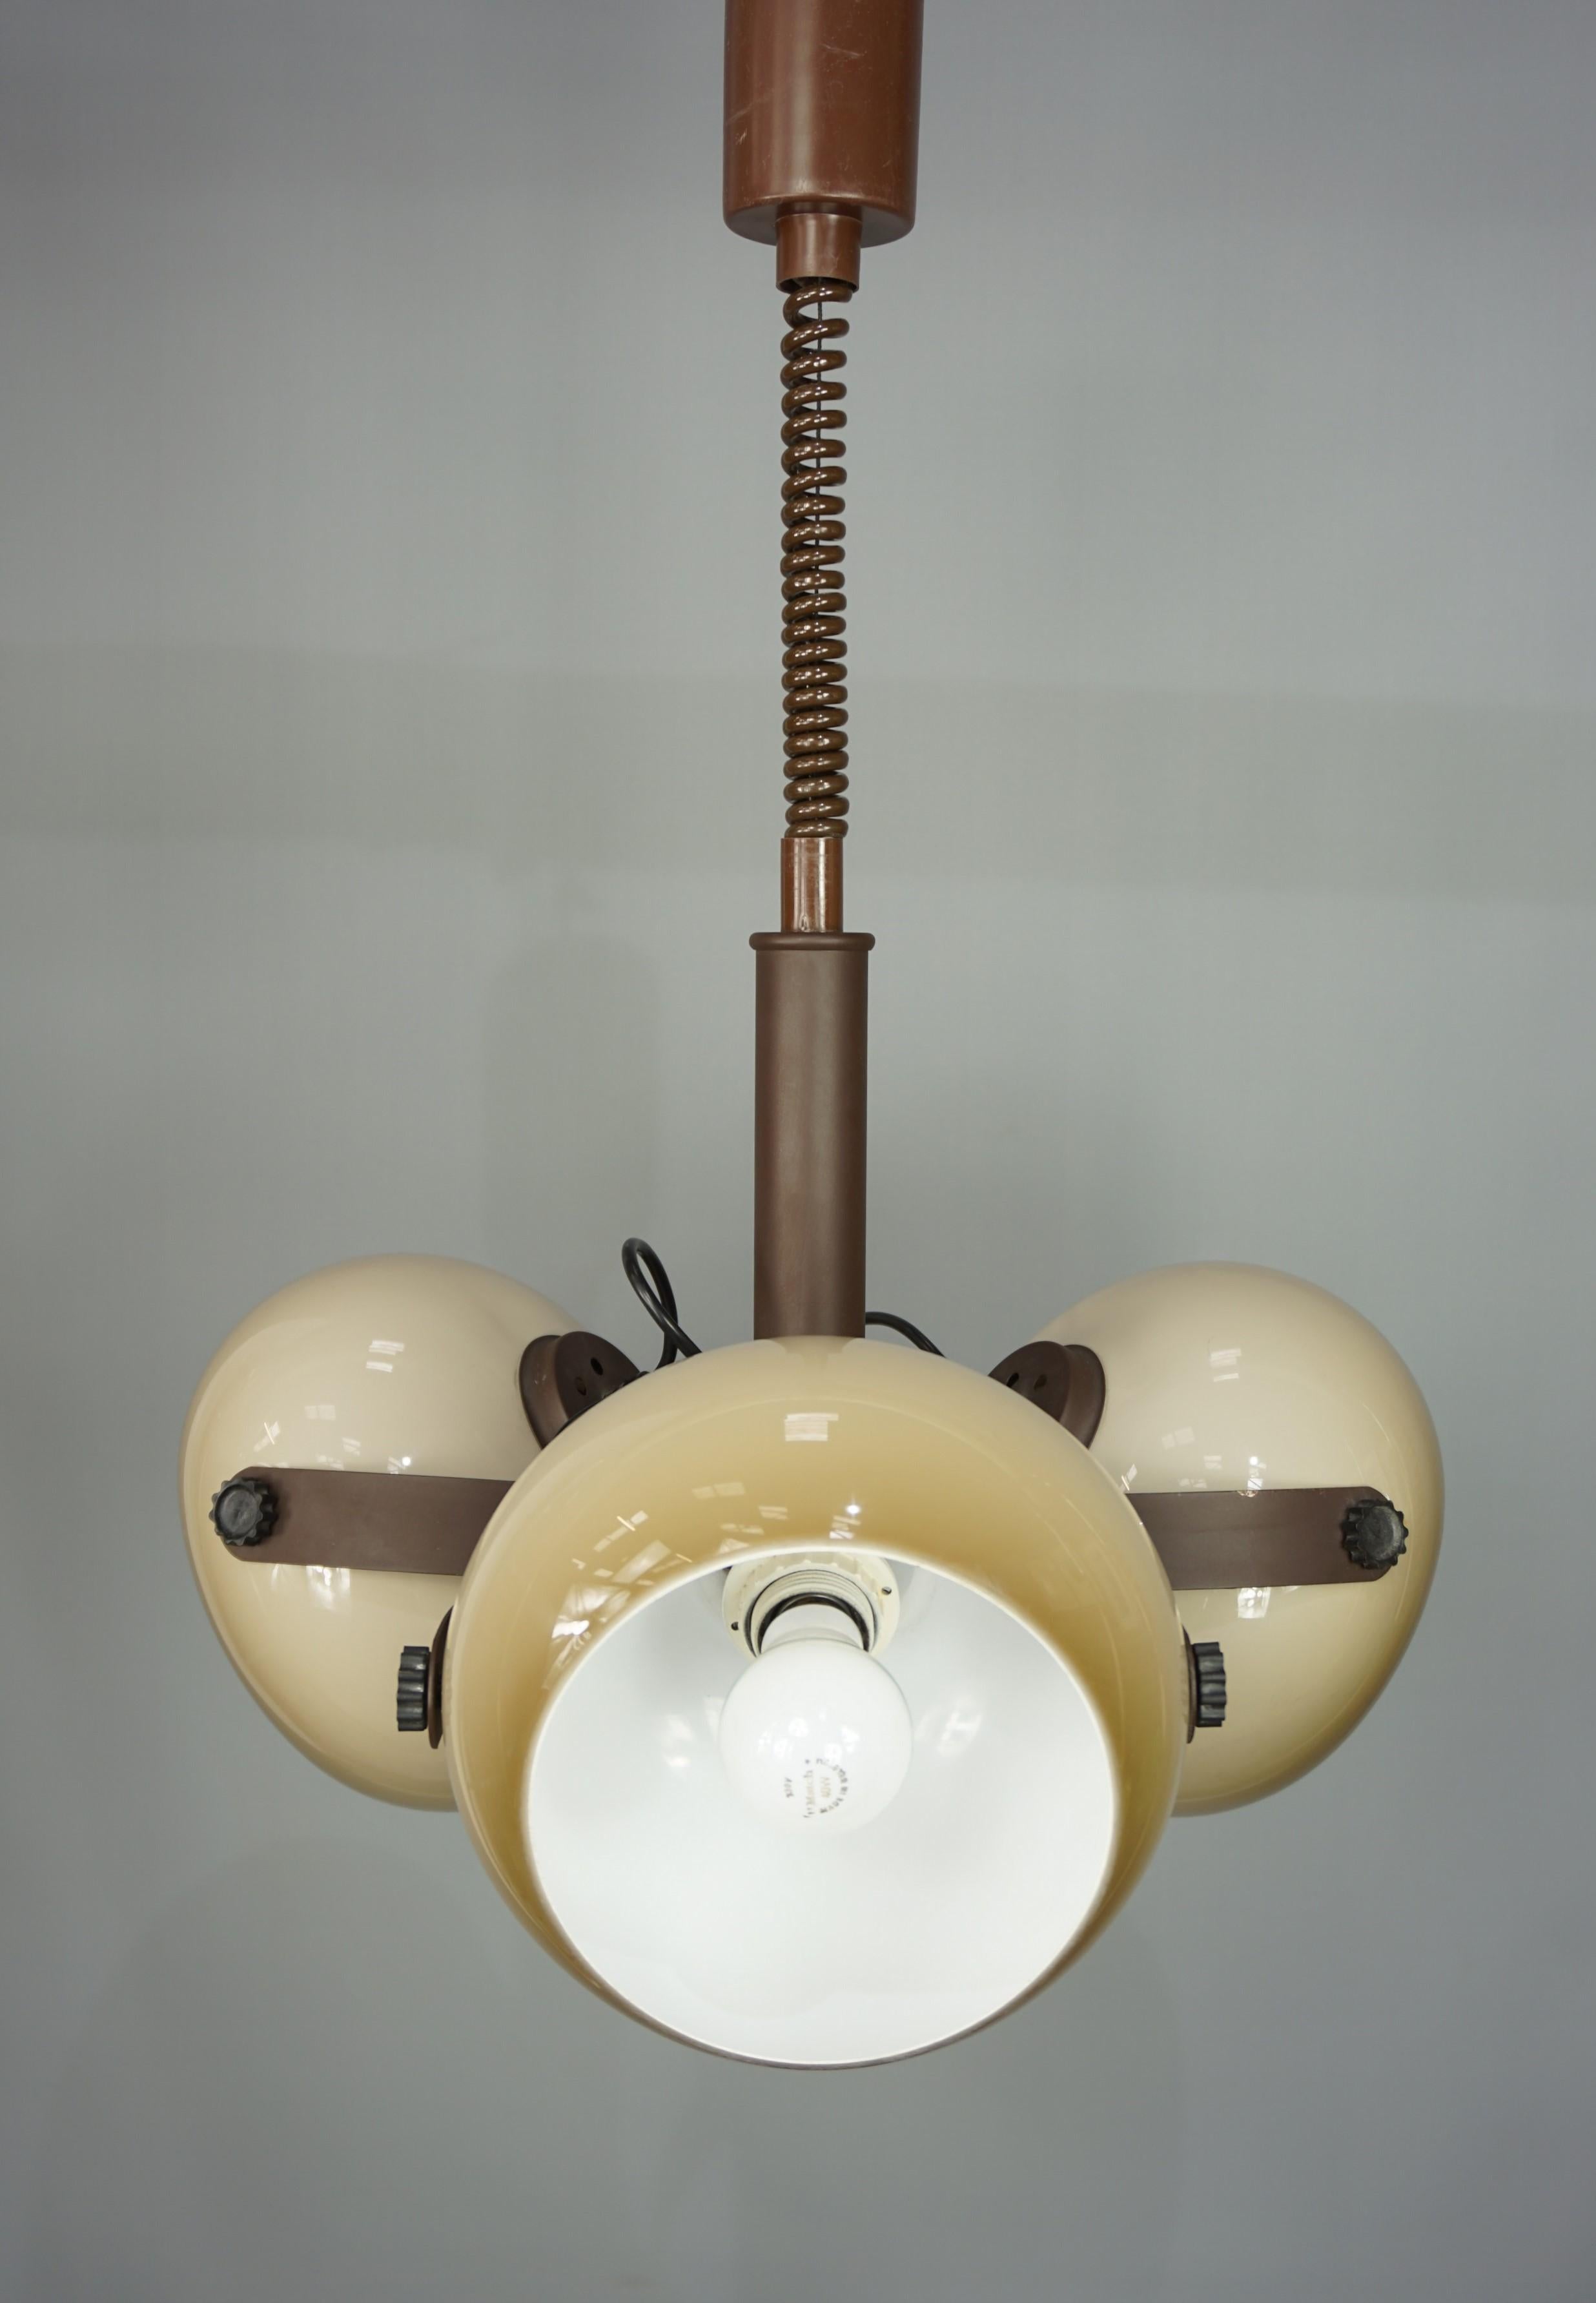 Mid-Century Modern Dark And Light Brown Chandelier, 1960s, Dutch Design by Dijkstra Lampen